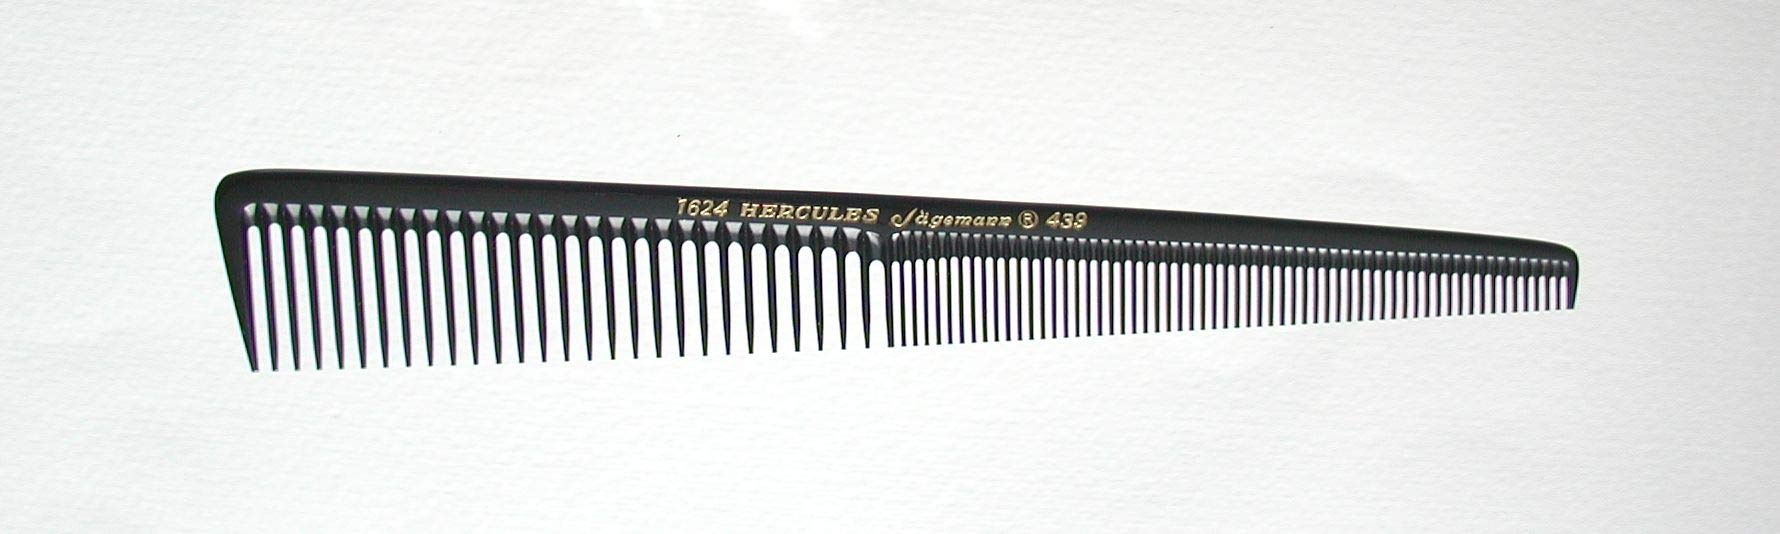 HERCULES SÄGEMANN - 1624-439 Kamm | Hochwertiger Facon Haarschneidekamm in Trapezgeometrie | Mit feiner Zahnteilung ideal für 1-20mm-Schnitte | Größe: 7,5 Zoll